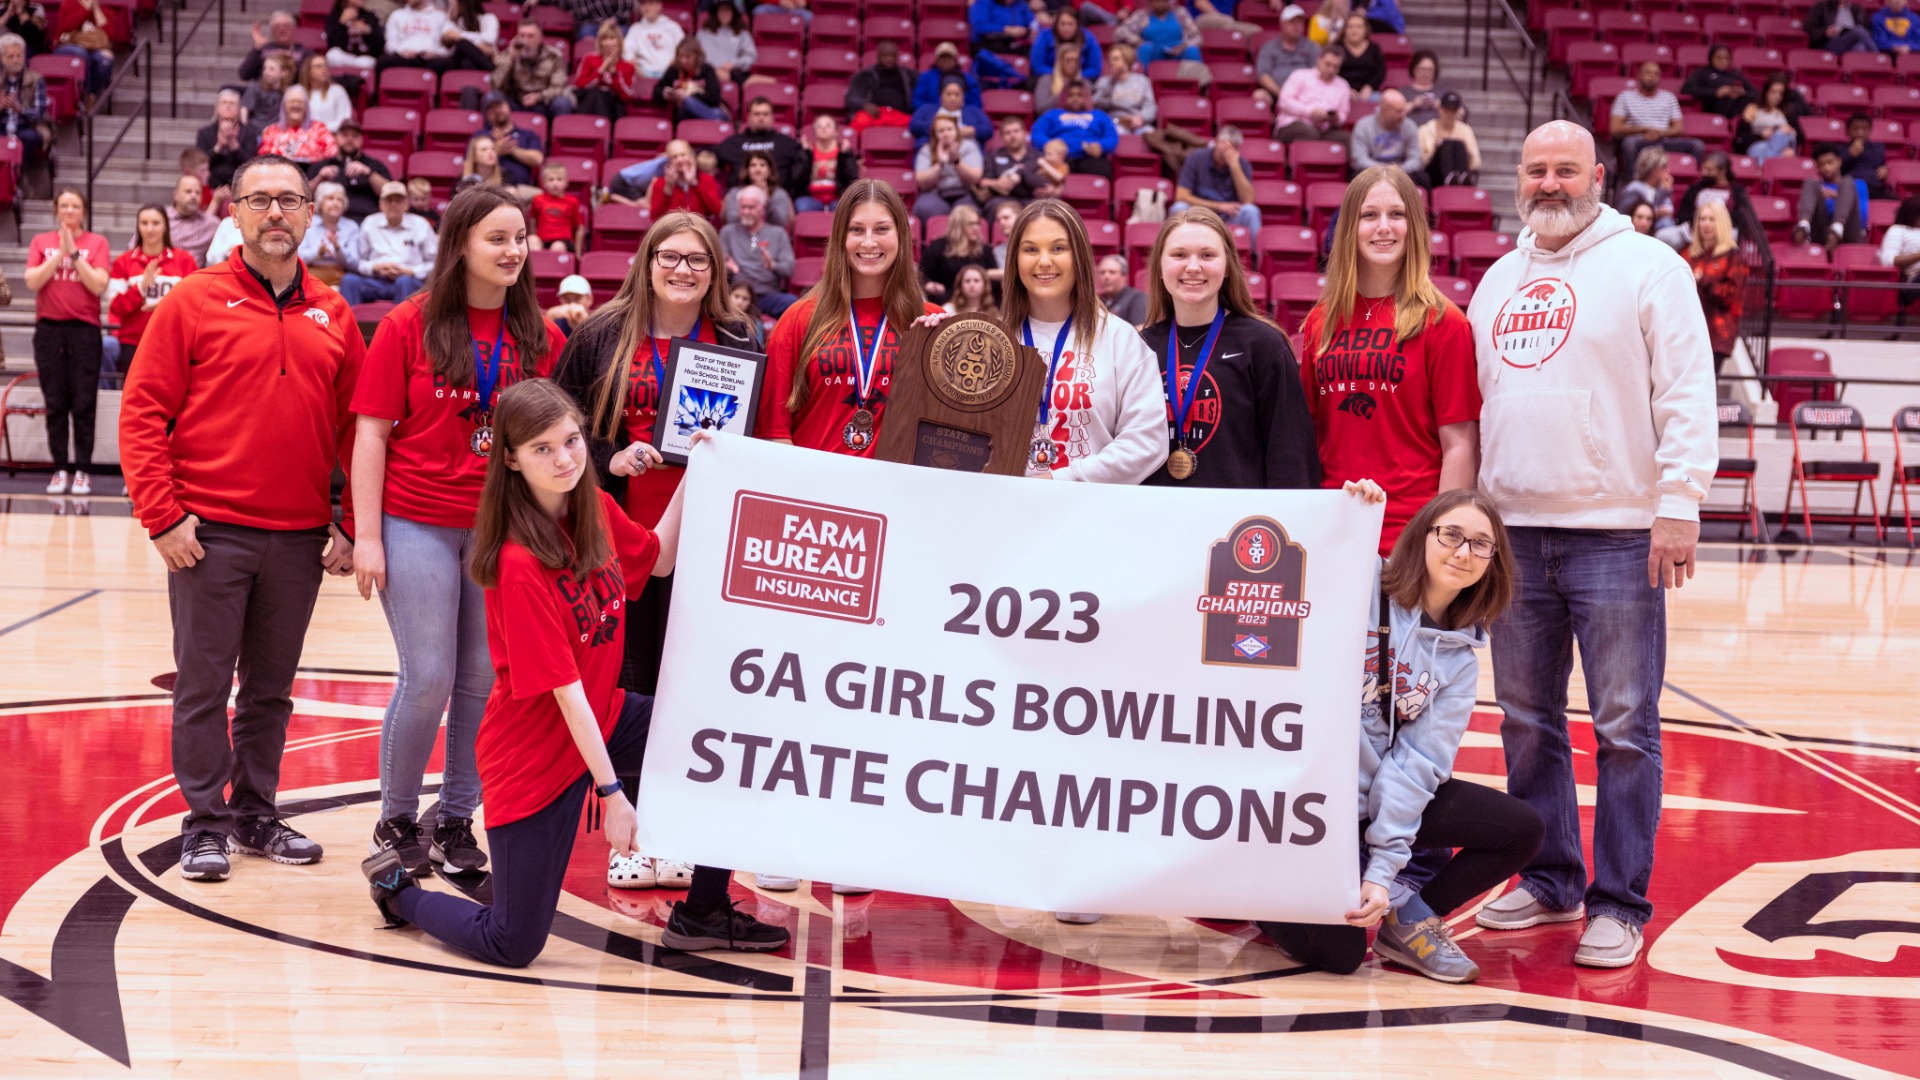 CabotSlide 3 - 2023 6A Girls Bowling State Champions